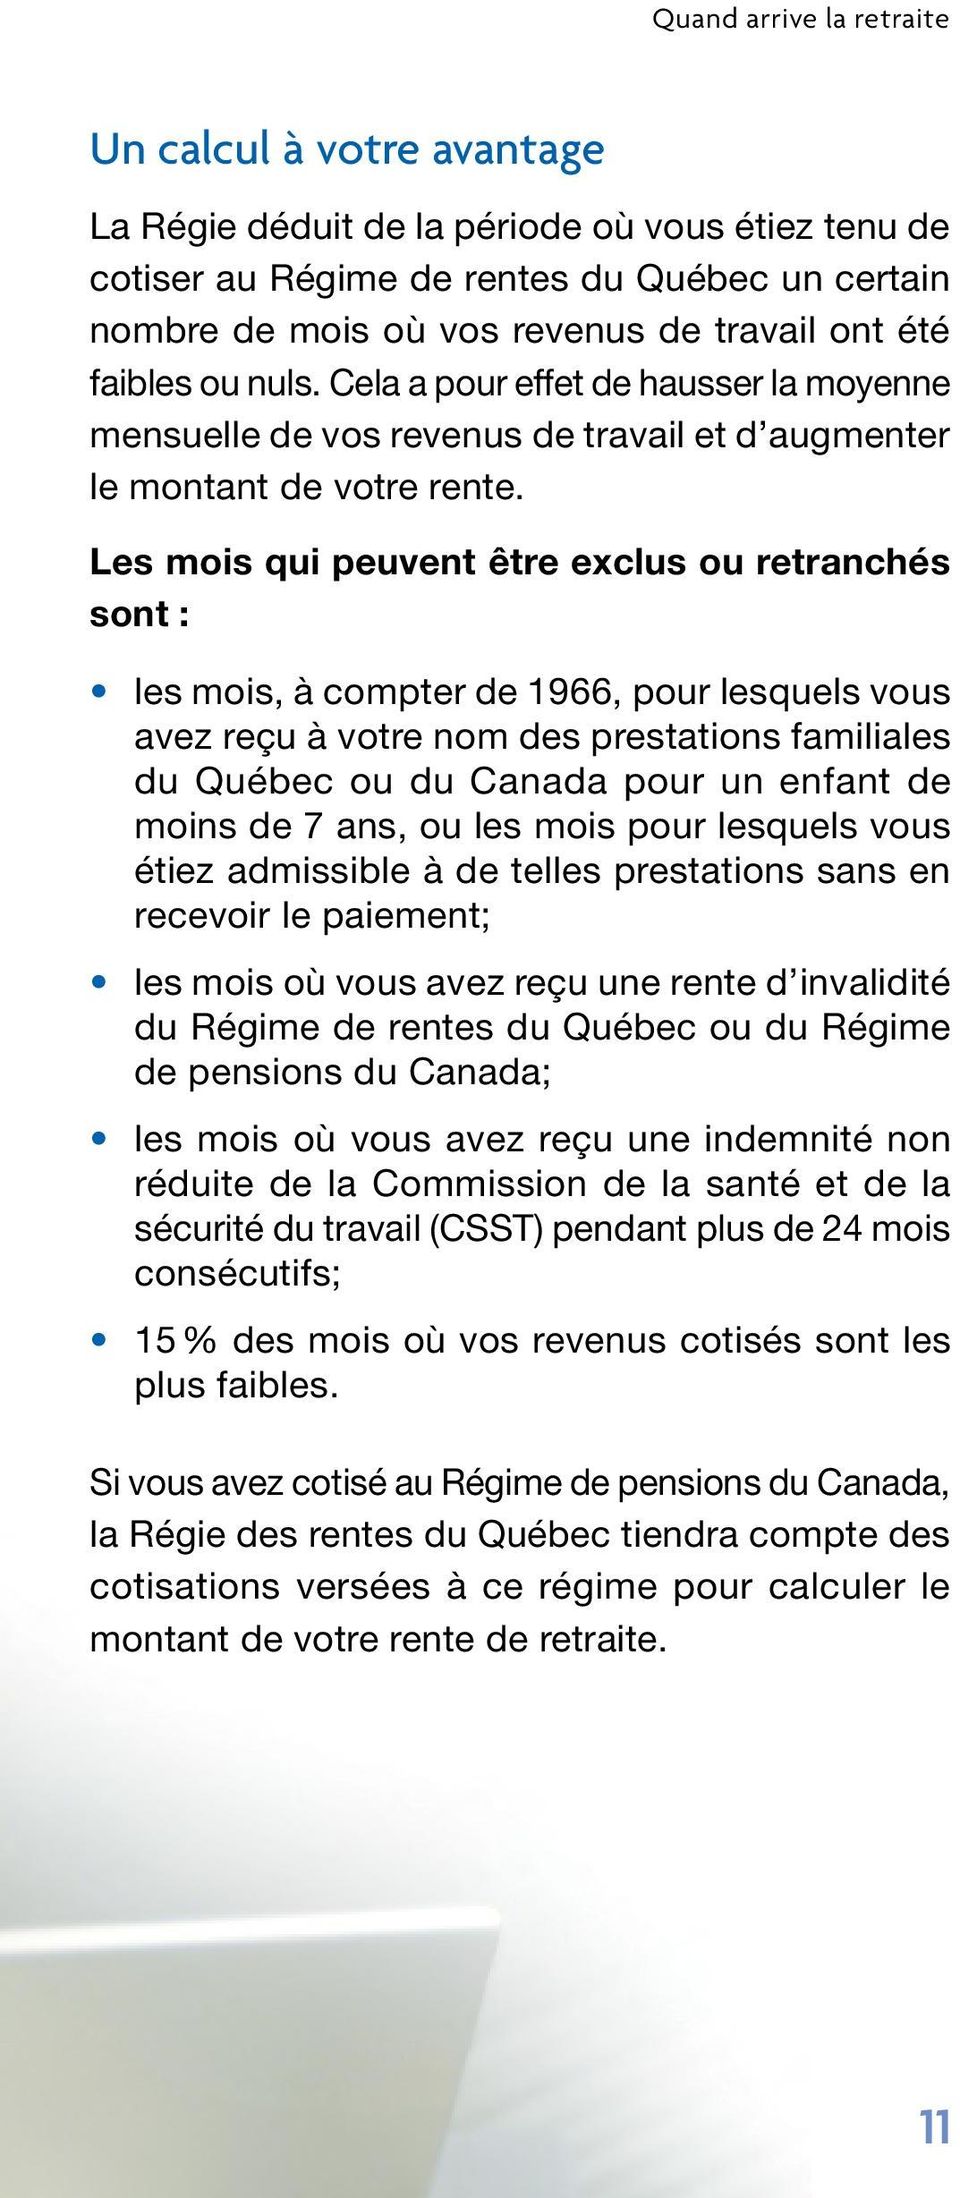 Les mois qui peuvent être exclus ou retranchés sont : les mois, à compter de 1966, pour lesquels vous avez reçu à votre nom des prestations familiales du Québec ou du Canada pour un enfant de moins